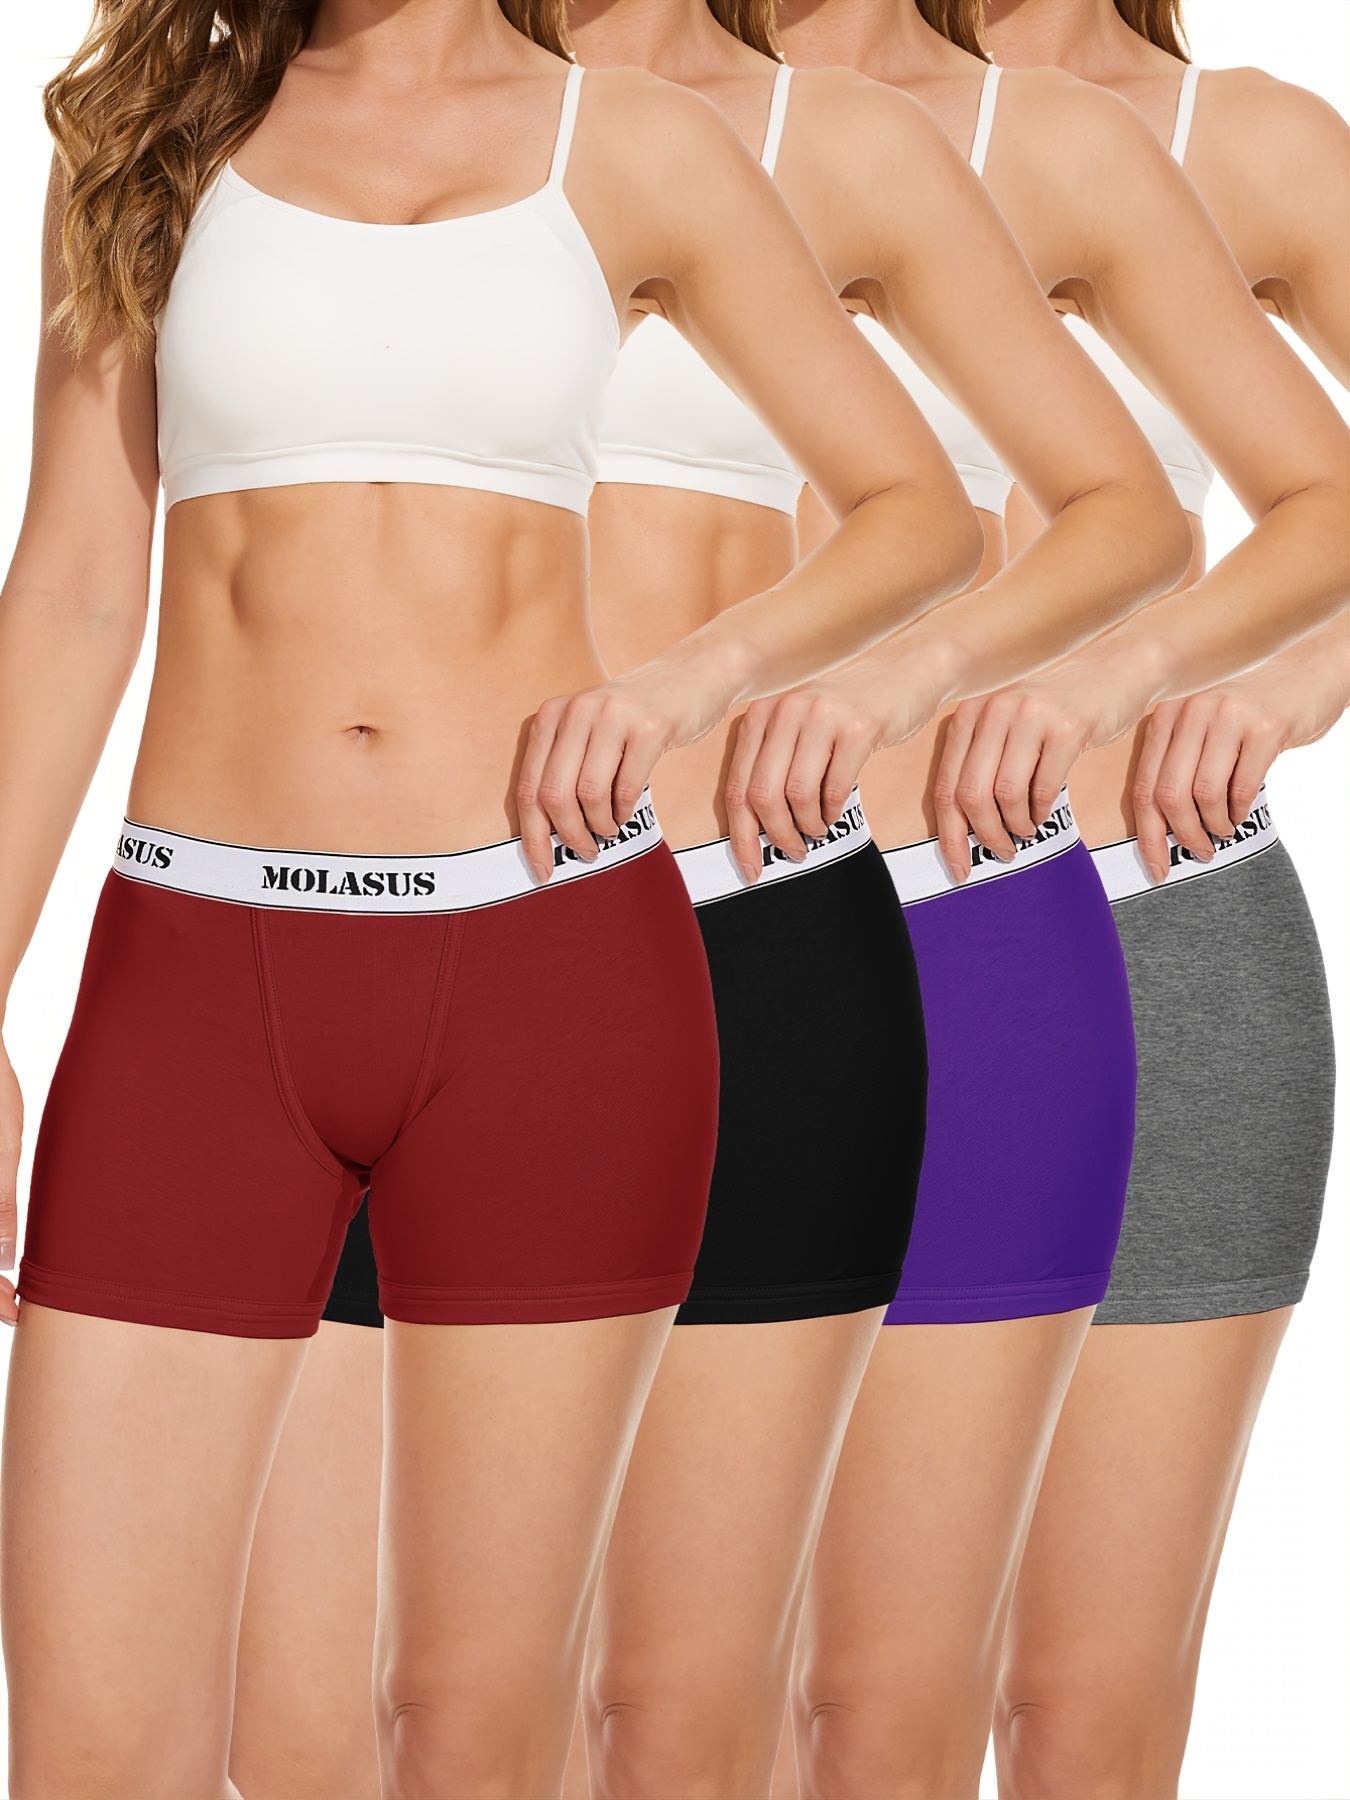 Underwear for Women - Panties, Bras & Boxers